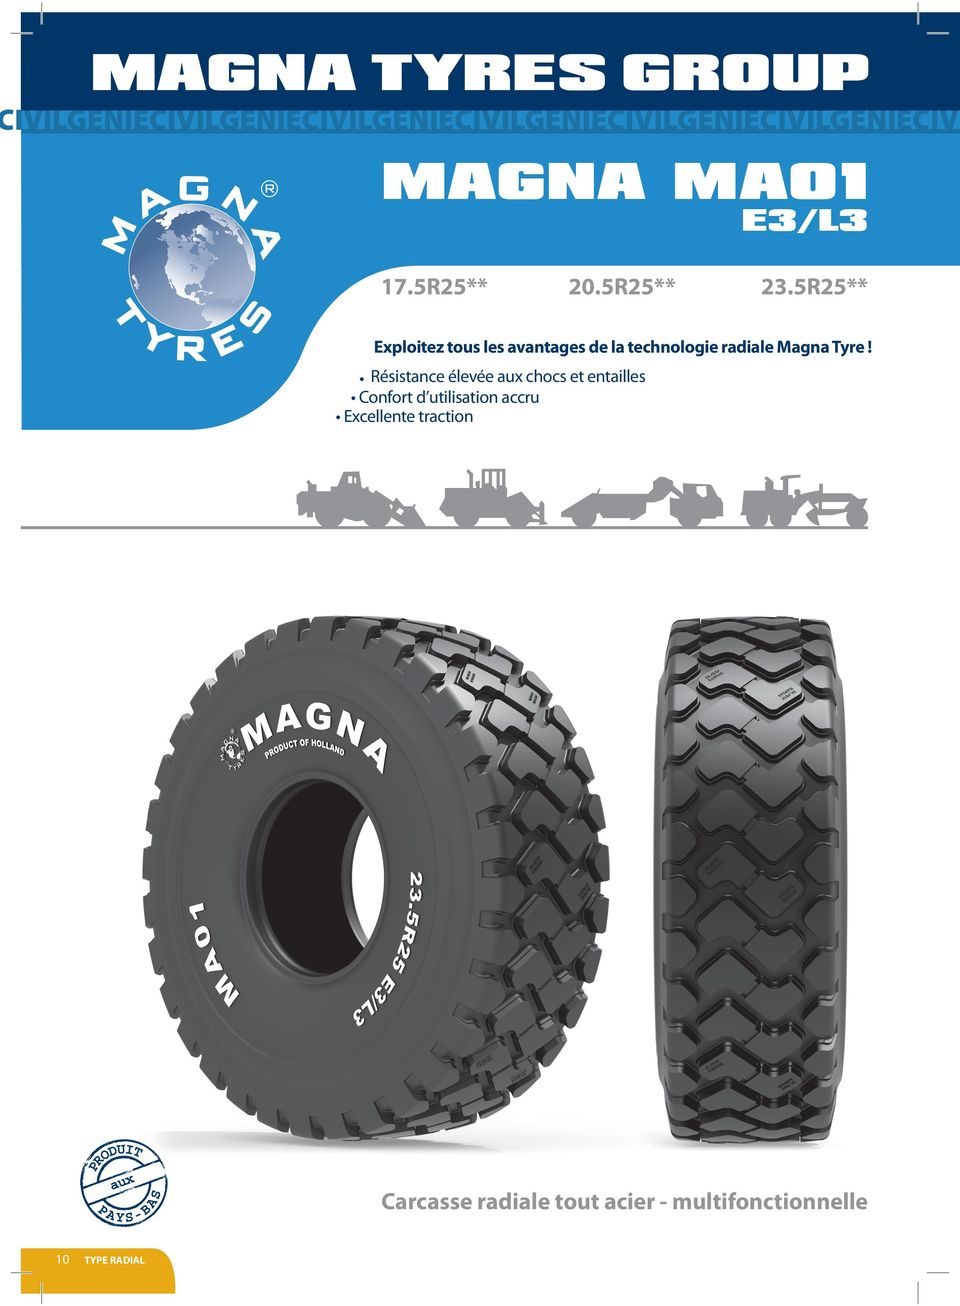 5R25** Exploitez tous les avantages de la technologie radiale Magna Tyre!